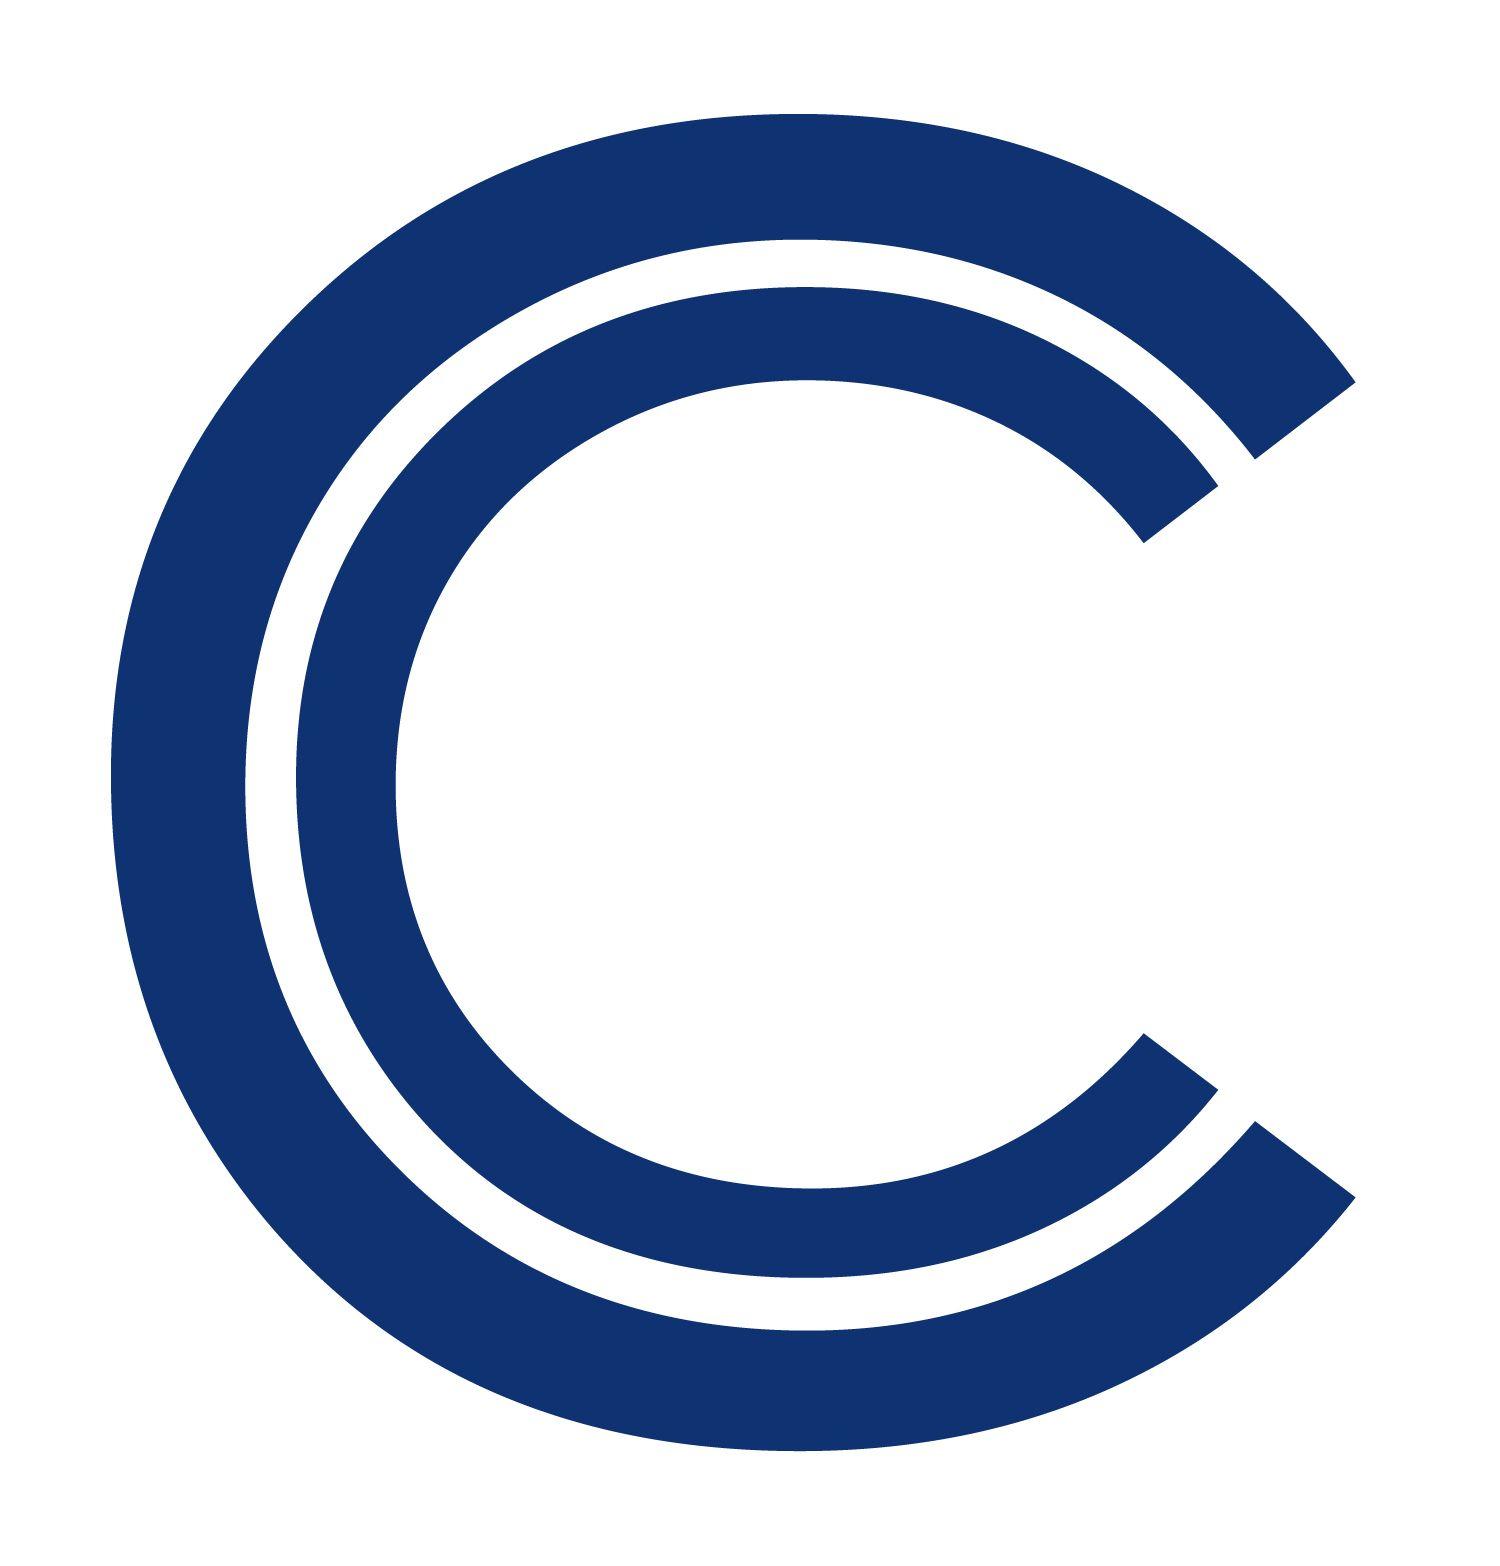 CC Company Logo - Cc designer Logos